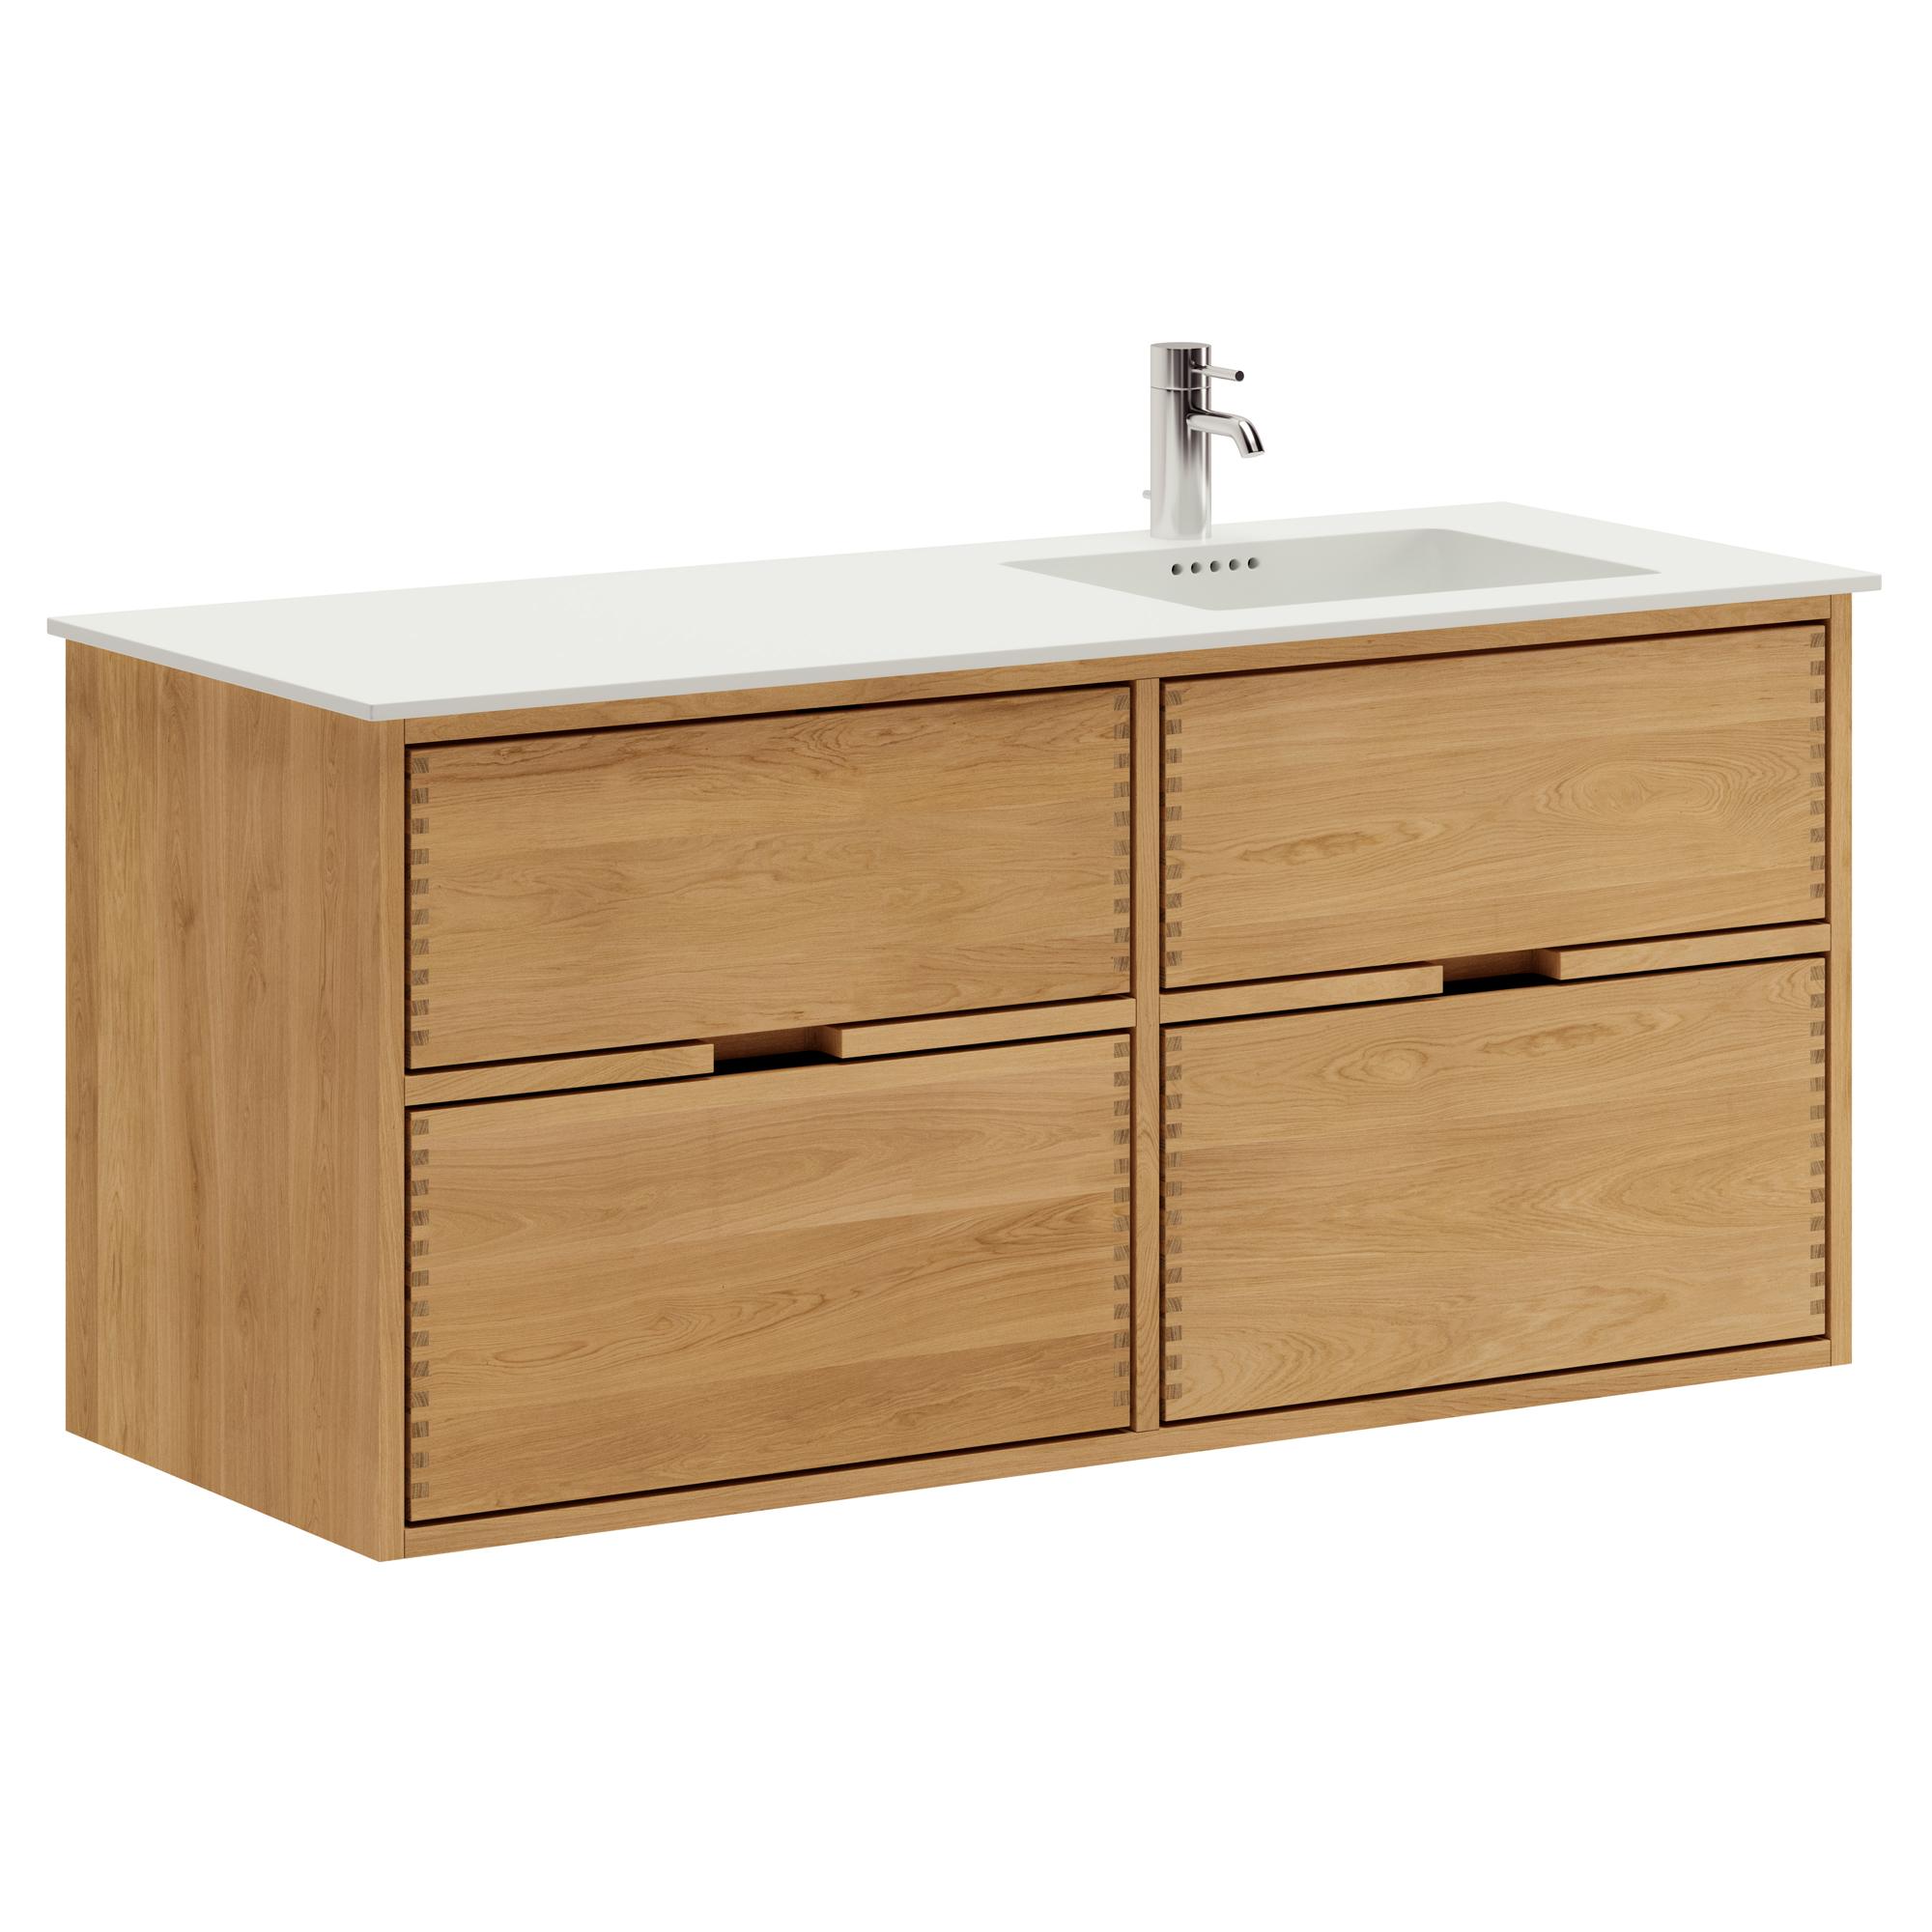 120 cm Just Wood Badezimmermöbel mit 4 Schubladen und Solid Surface-Waschbecken - Rechts